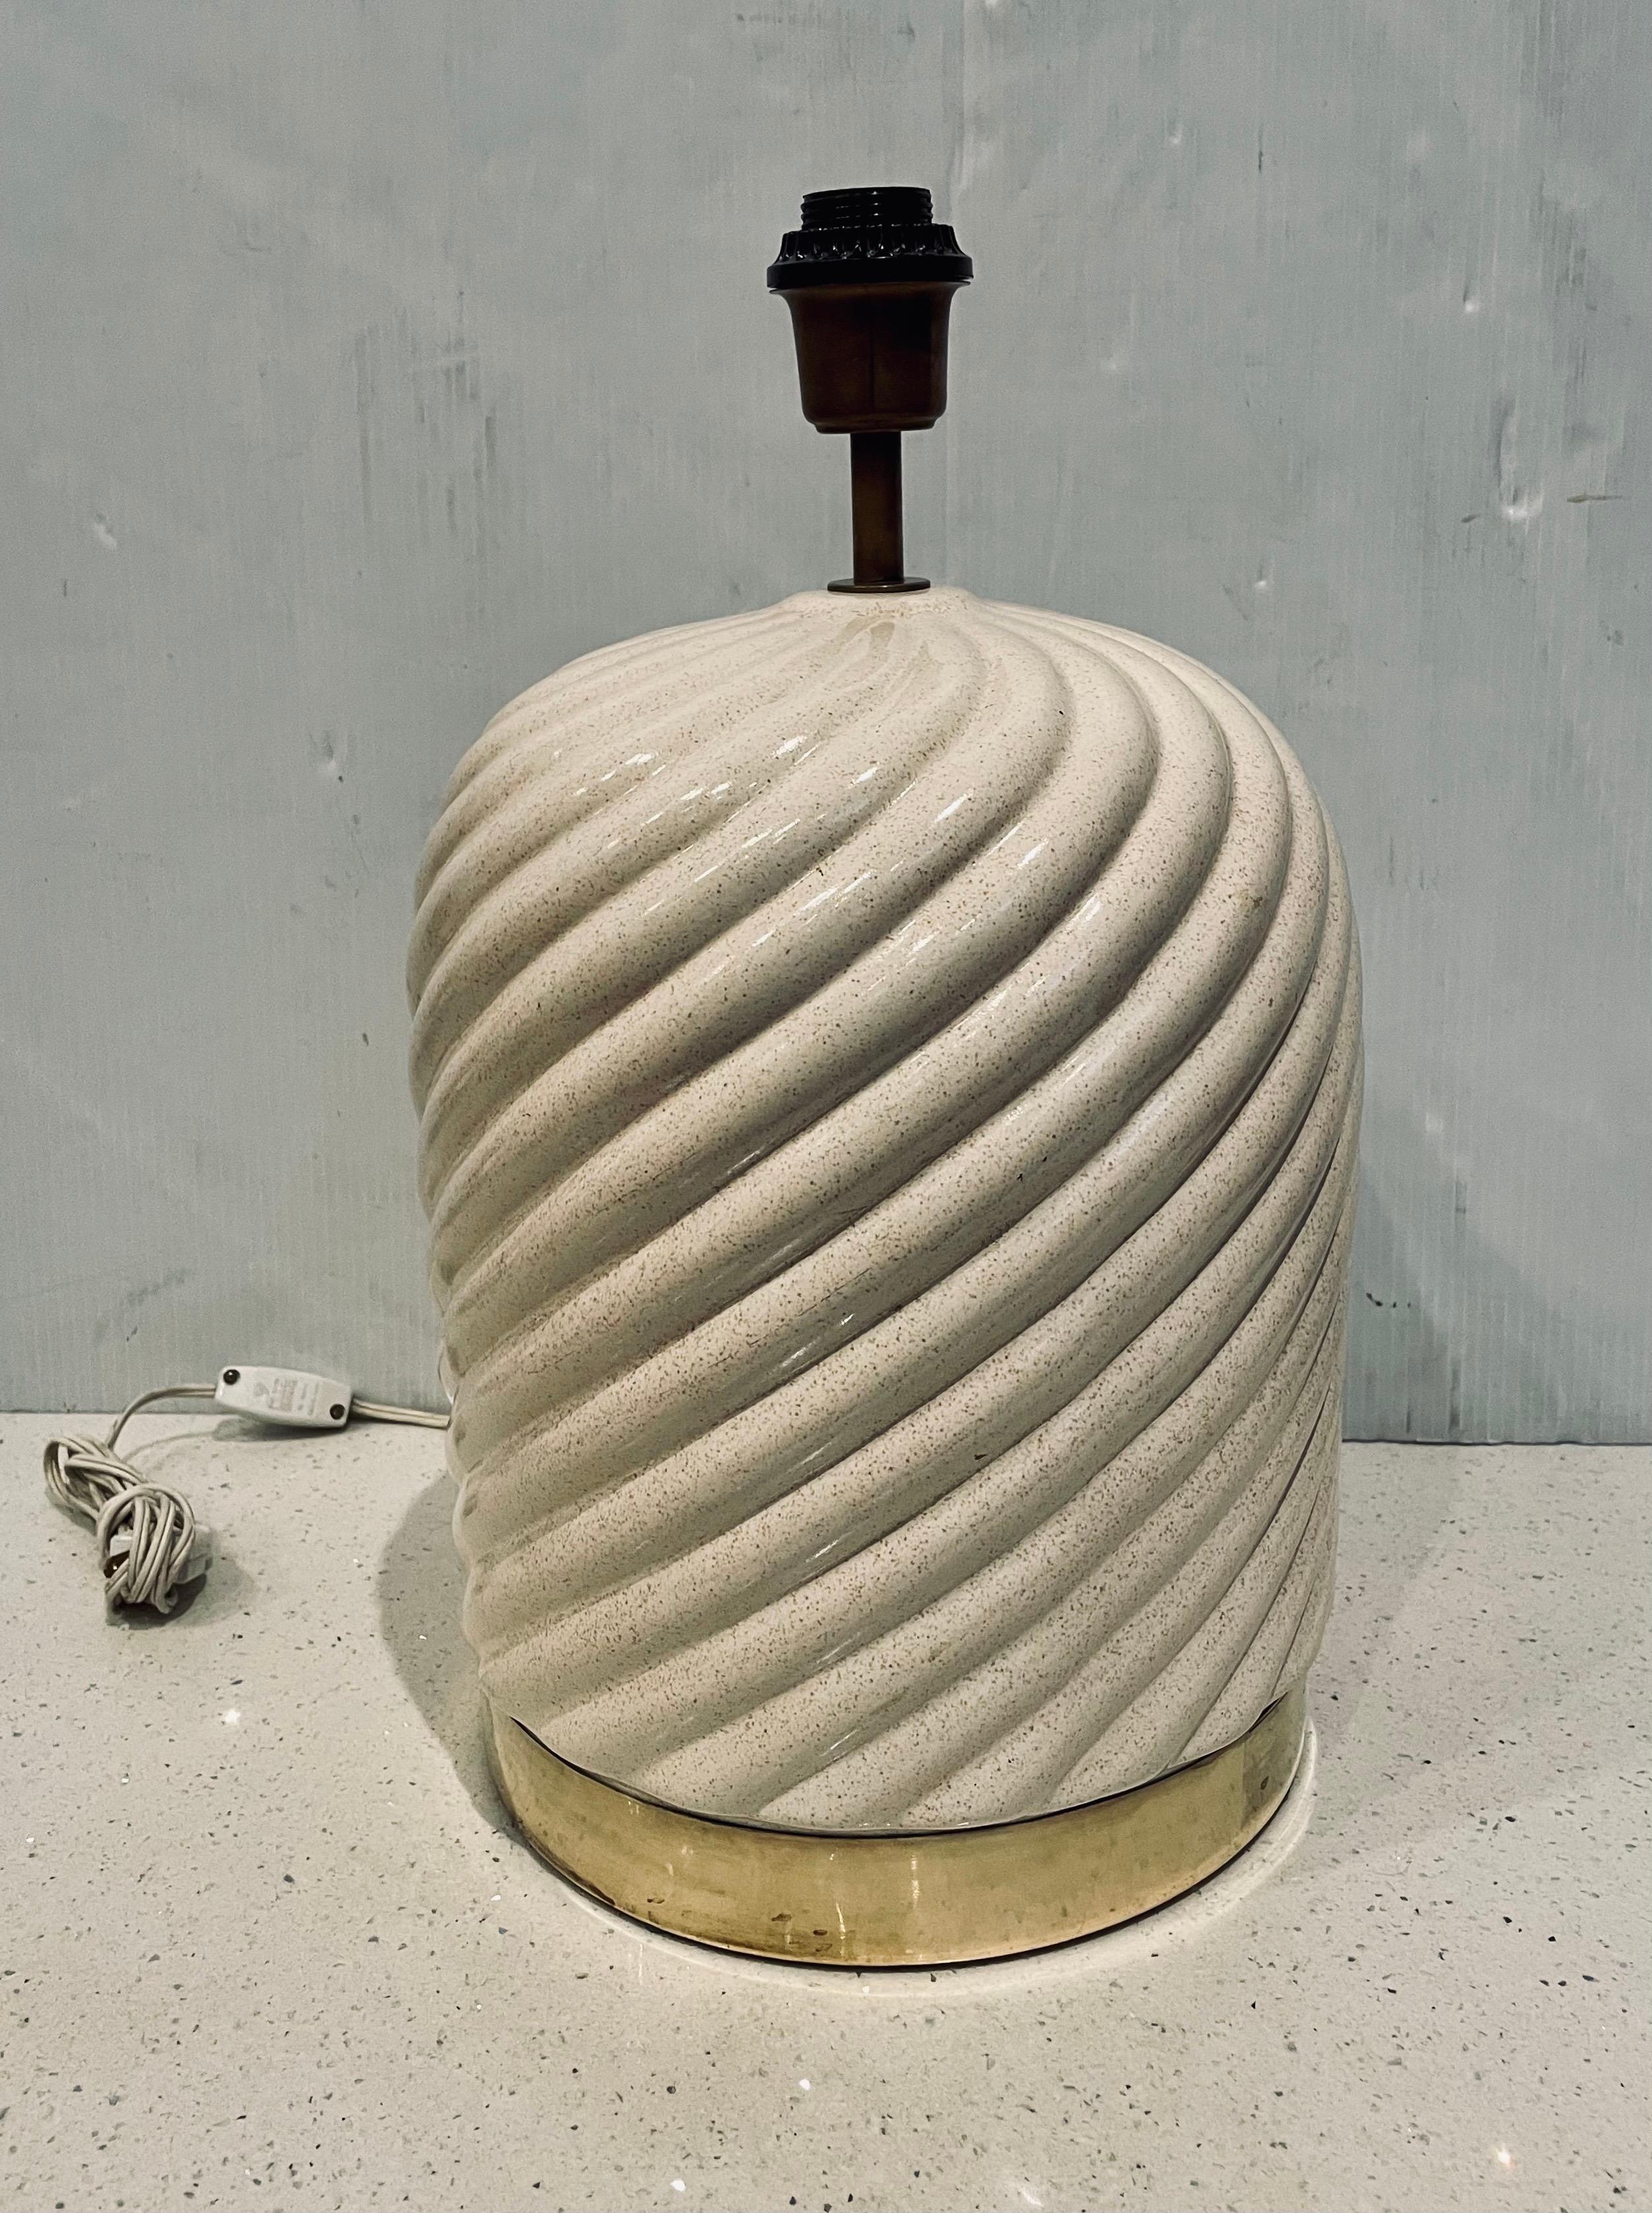 Belle et rare lampe de table en céramique avec une finition en porcelaine et des accents en laiton par Tommaso Barbi, vers les années 1970. Excellent état, fonctionne parfaitement sans éclats ni fissures, l'abat-jour n'est pas inclus. la lampe